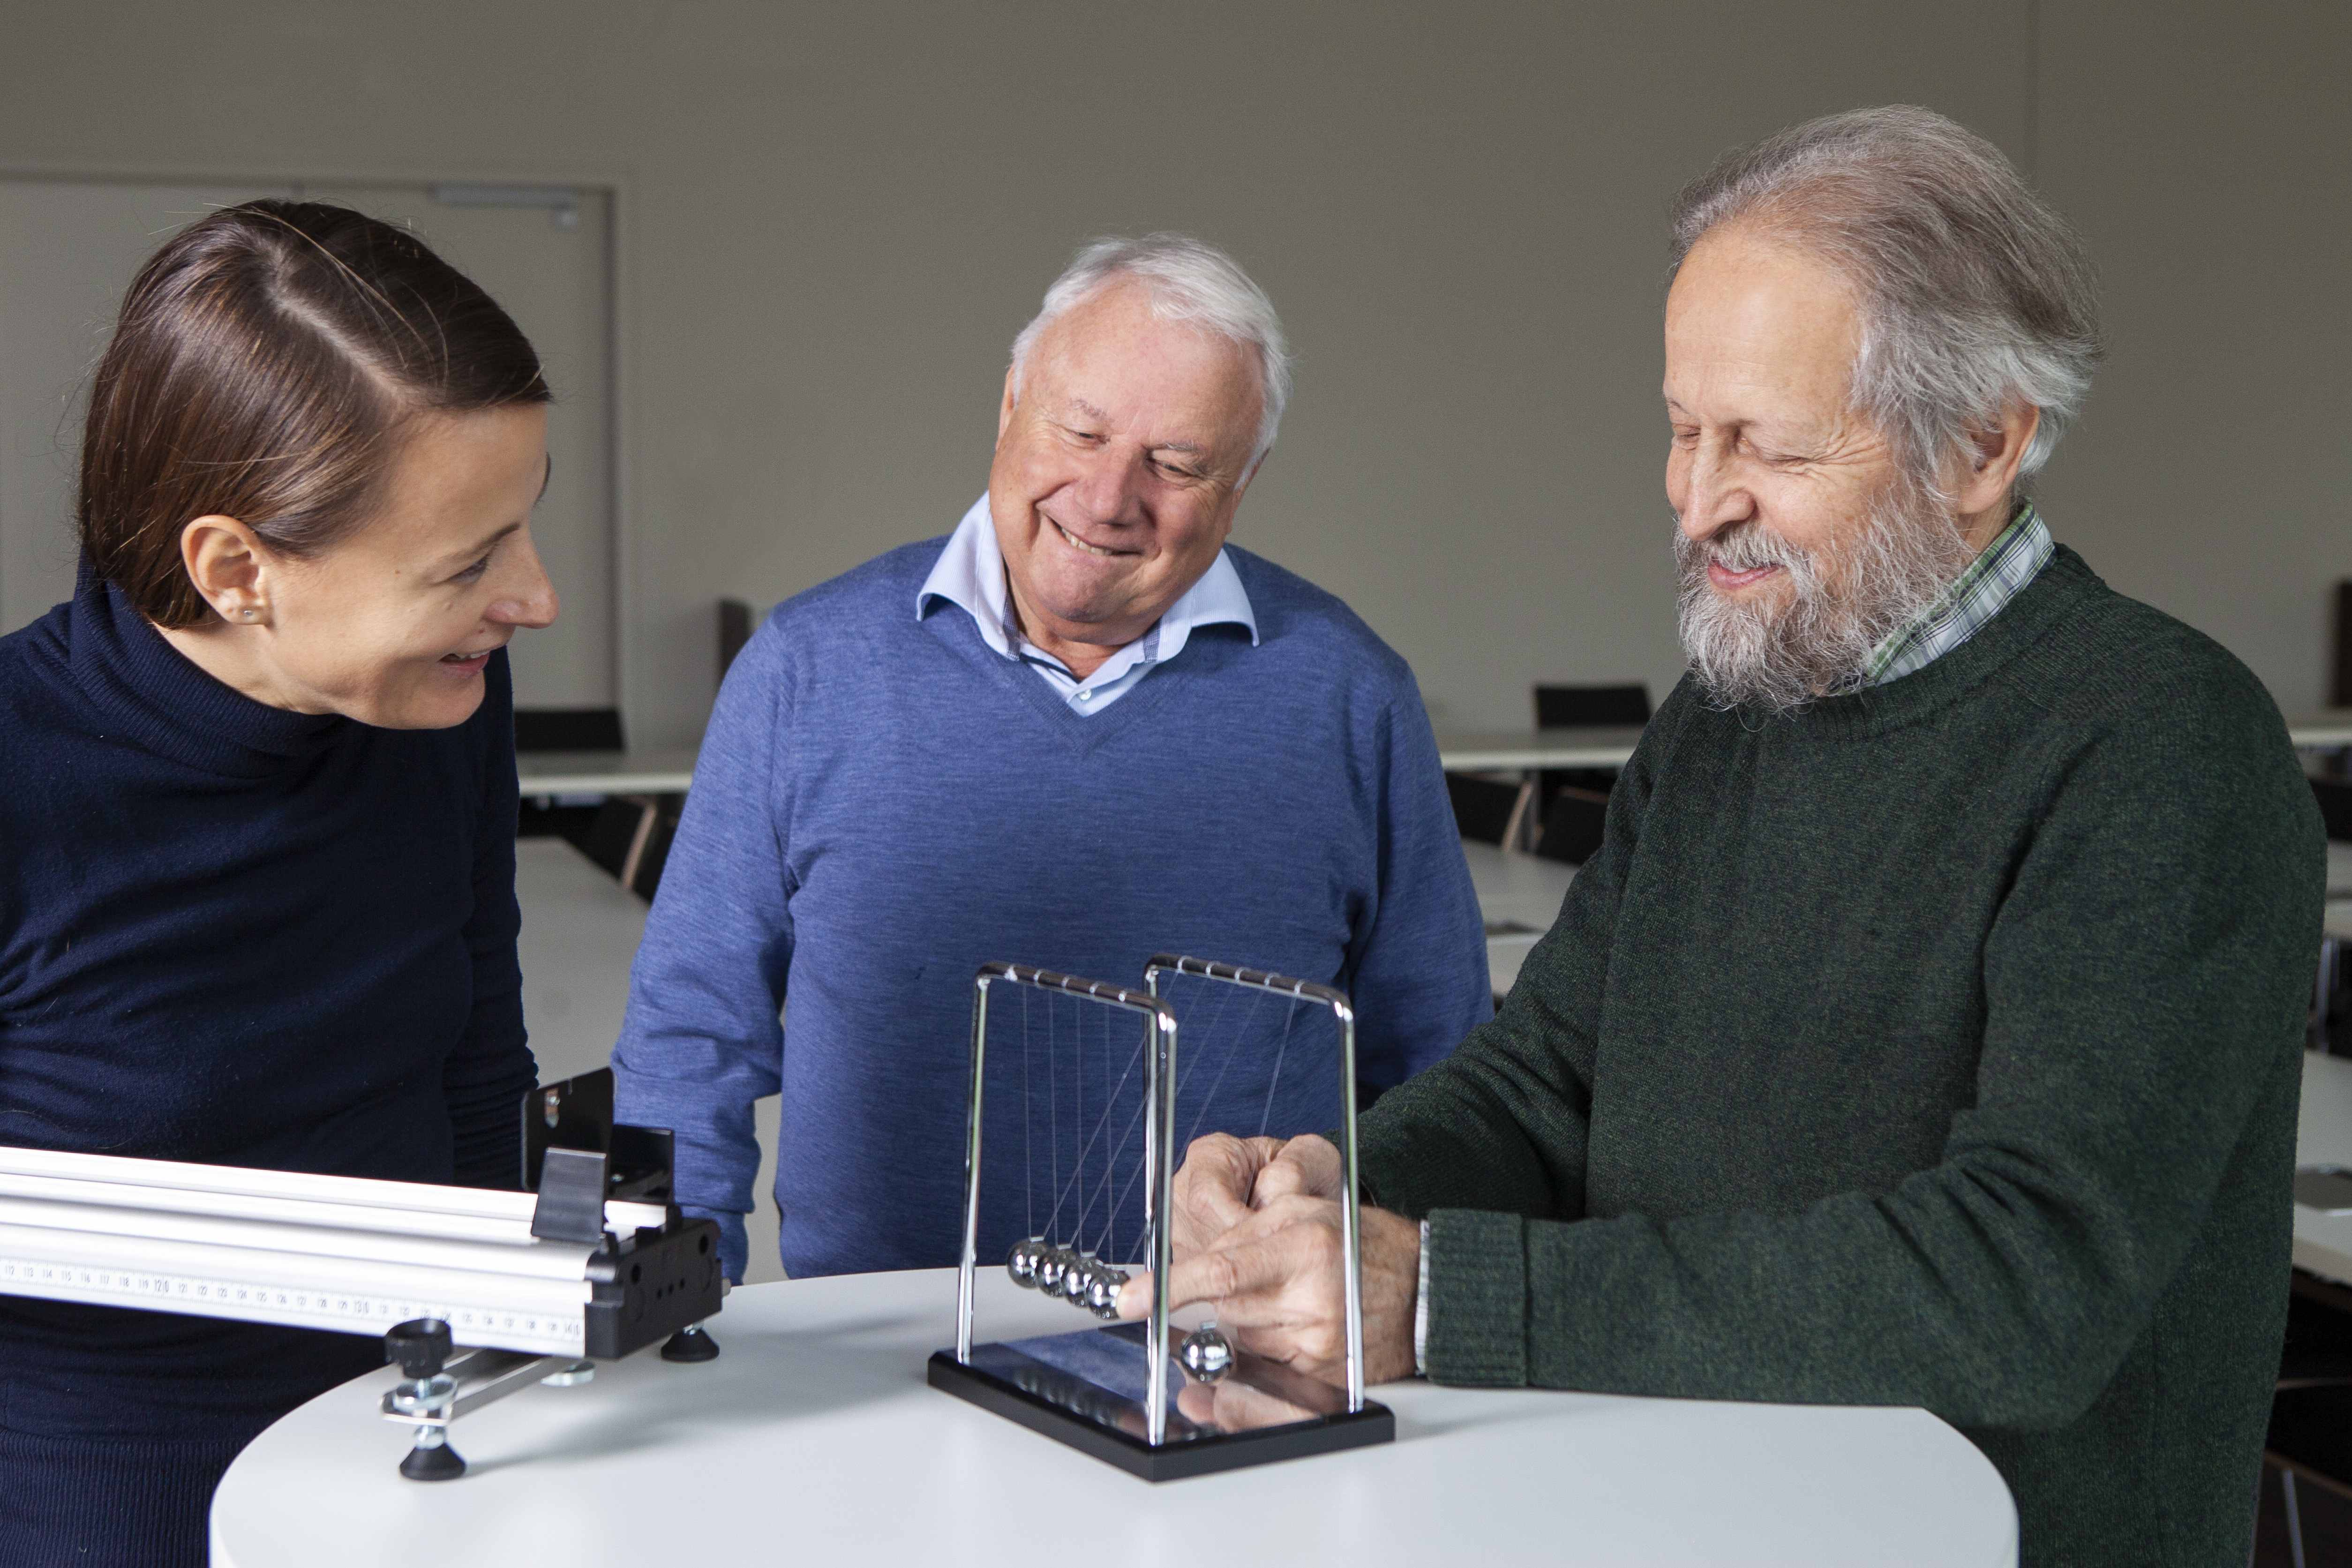 Ihre Begeisterung für Physik zeigen Josef Rosenzweig und Klaus Köhler auch während des Interviews.